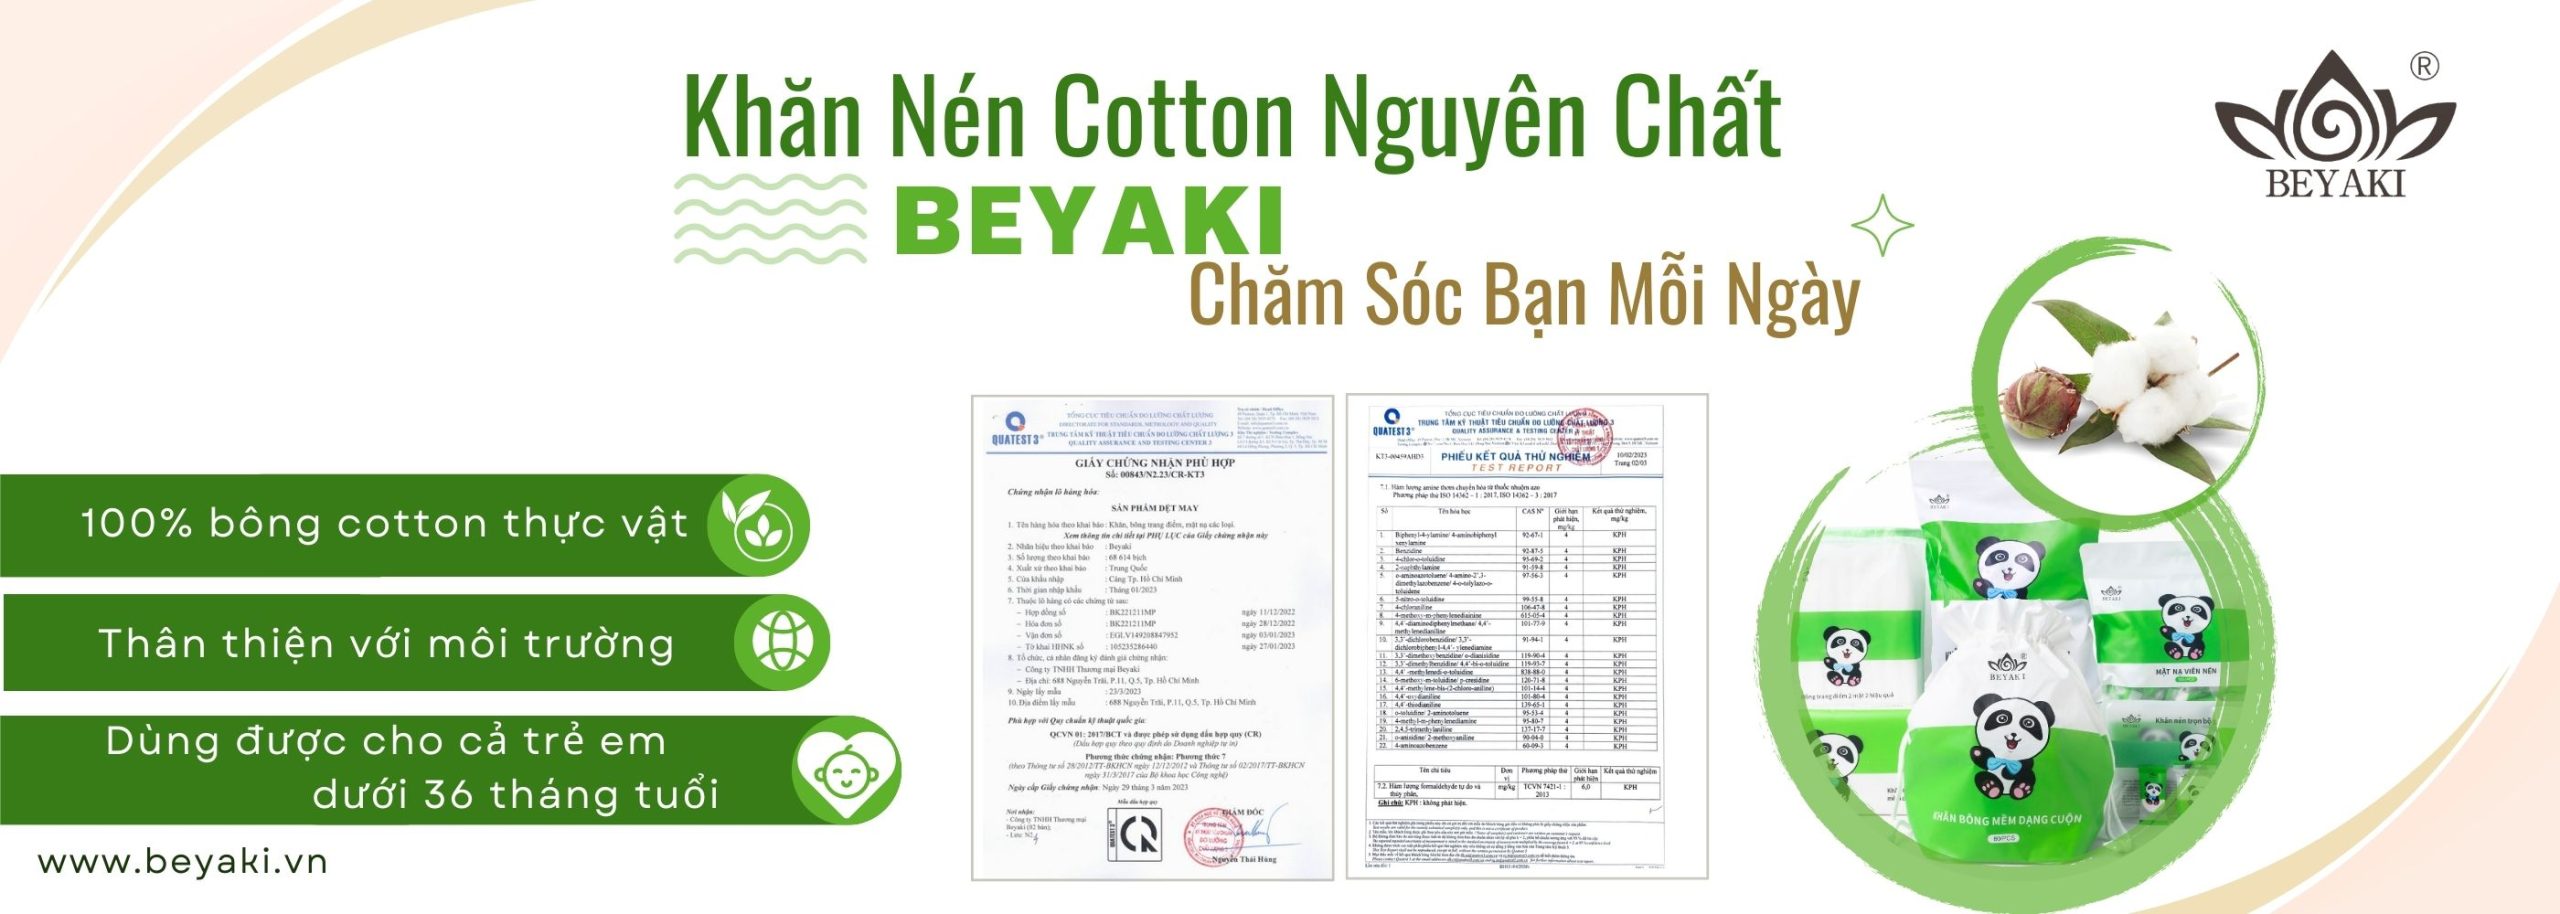 Sản phẩm khăn cotton Beyaki dùng 100% bông thực vật , có kiểm nghiệm theo luật bộ công thương